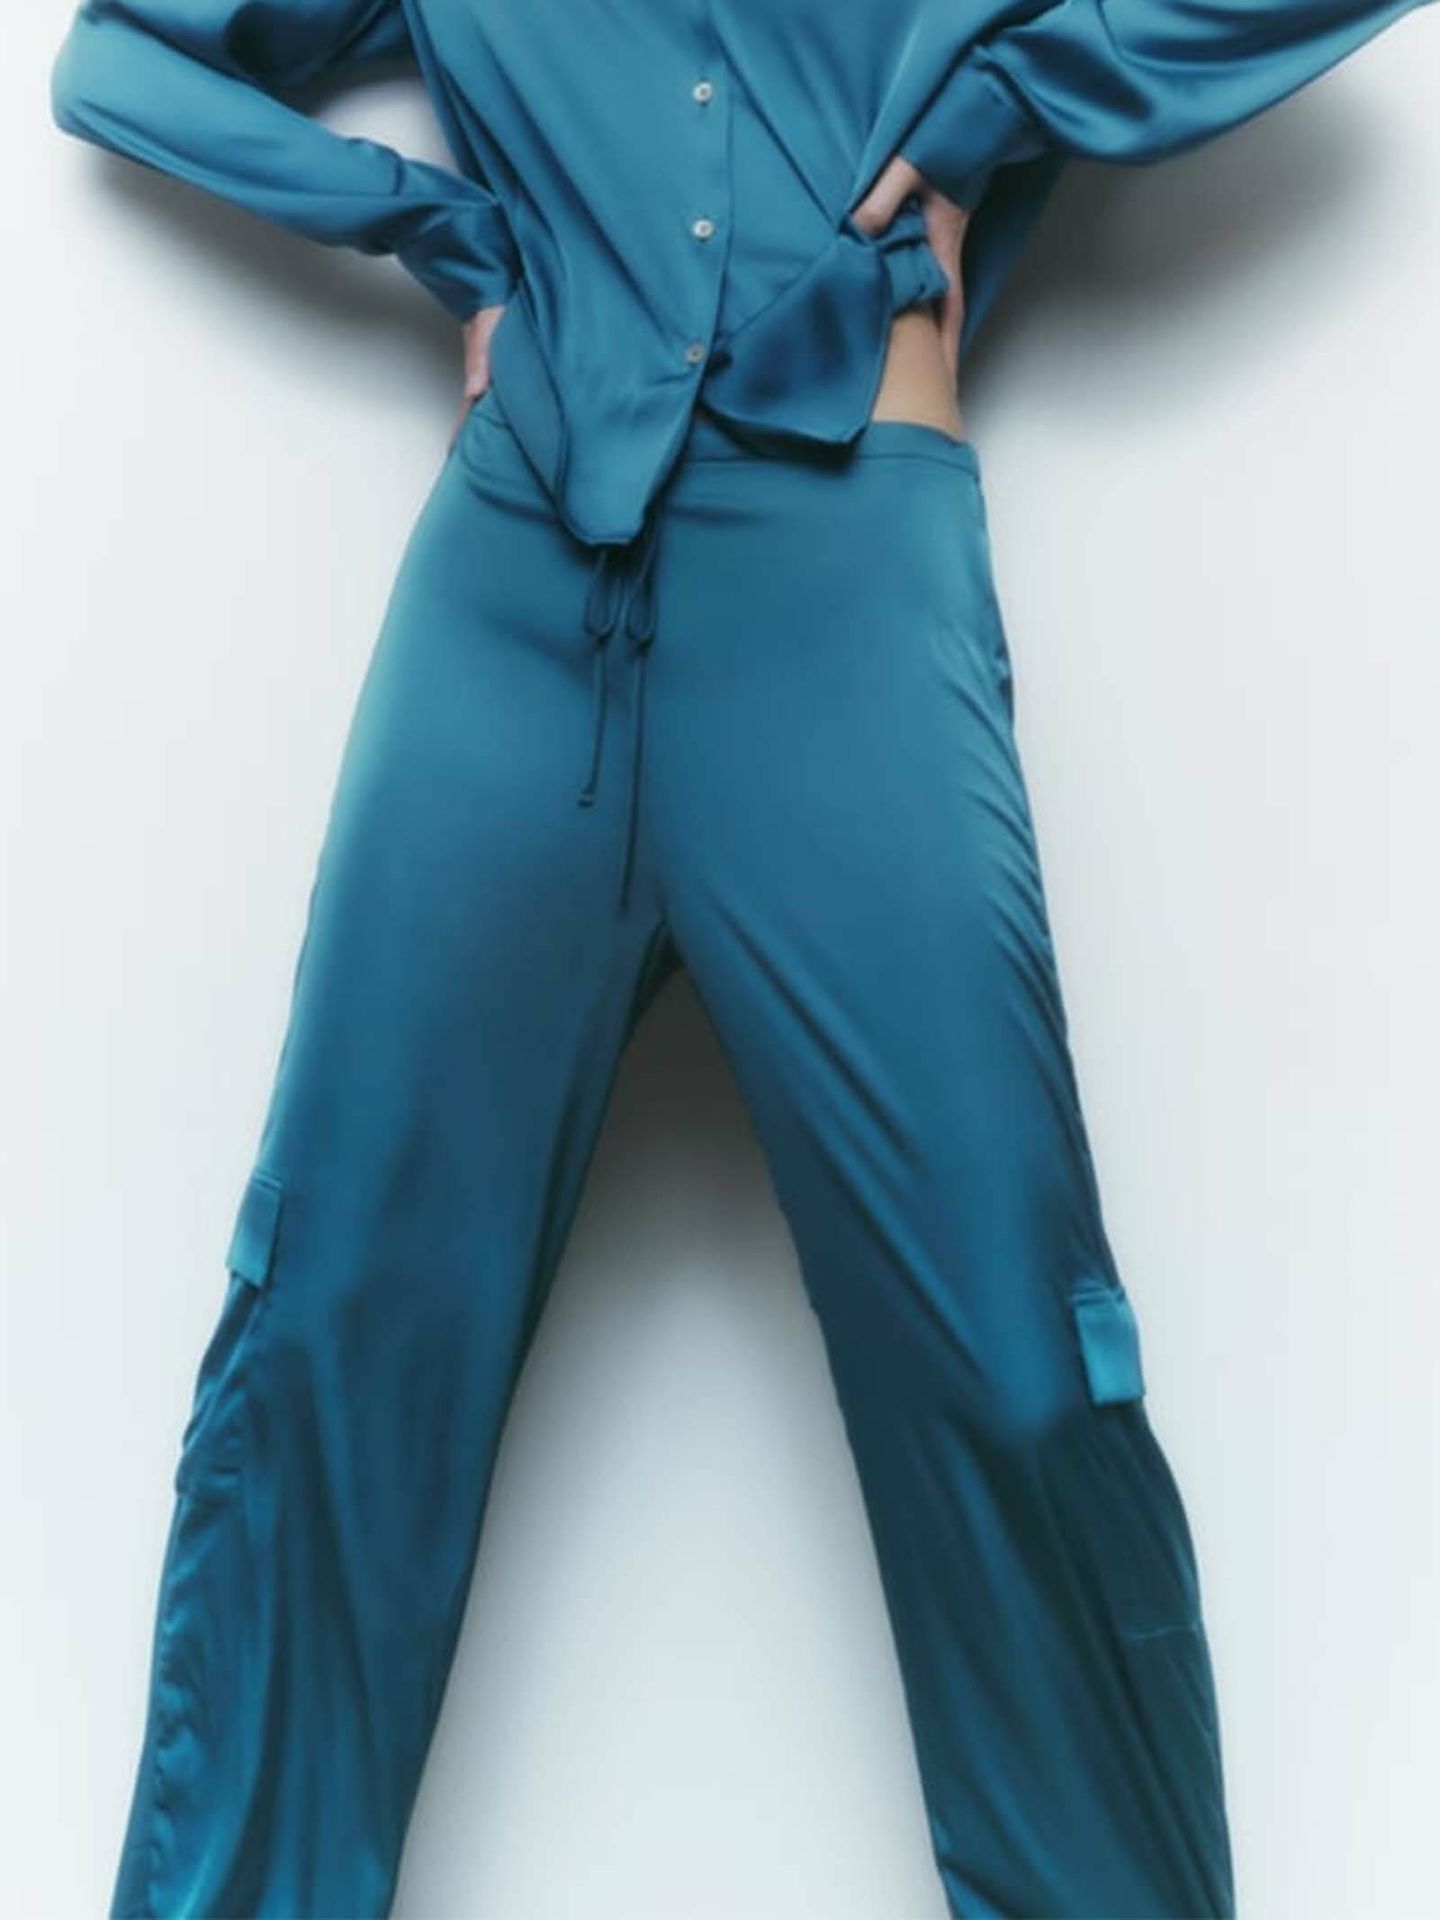 Los pantalones cargo son tendencia y estos de Zara son para mujeres de todas las edades. (Cortesía)